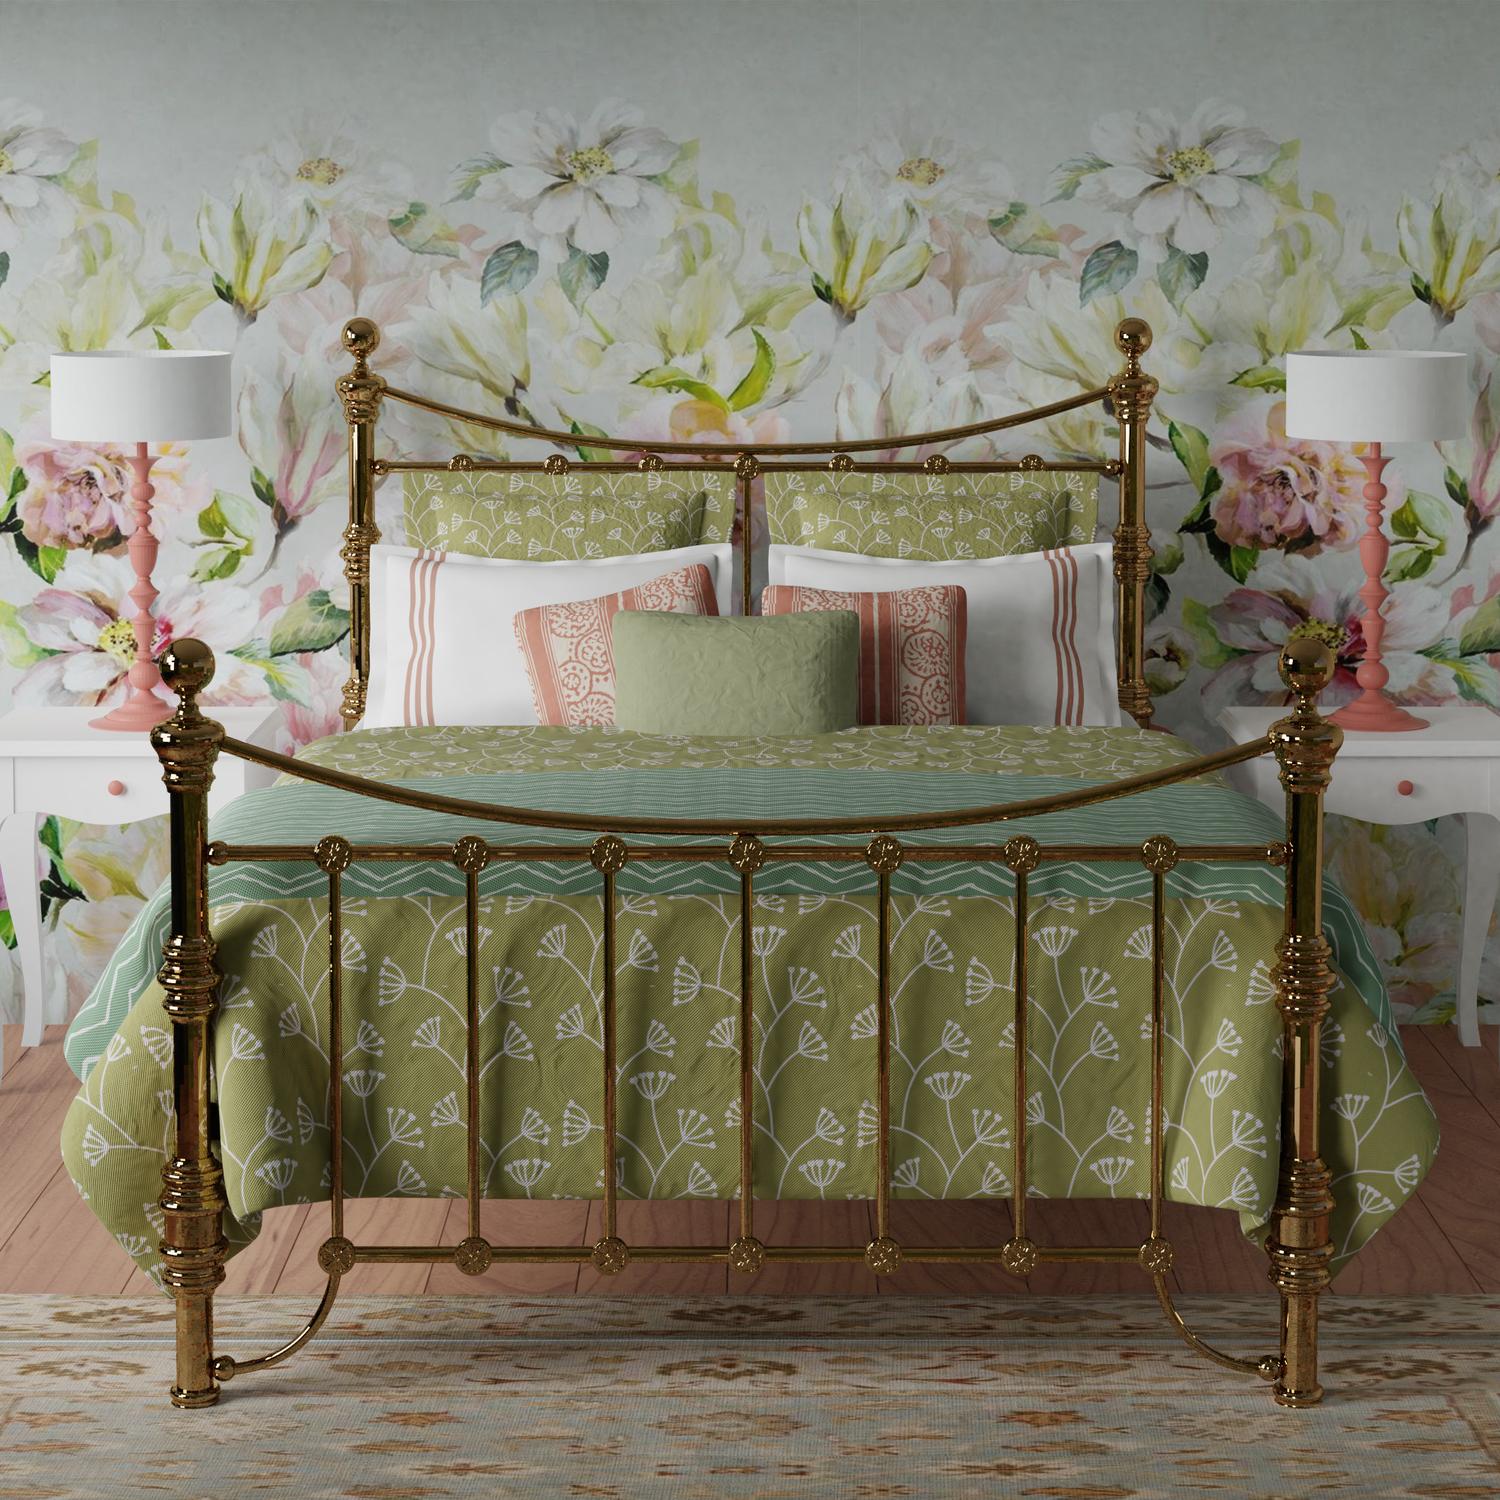 Arran brass bed - Image green linens